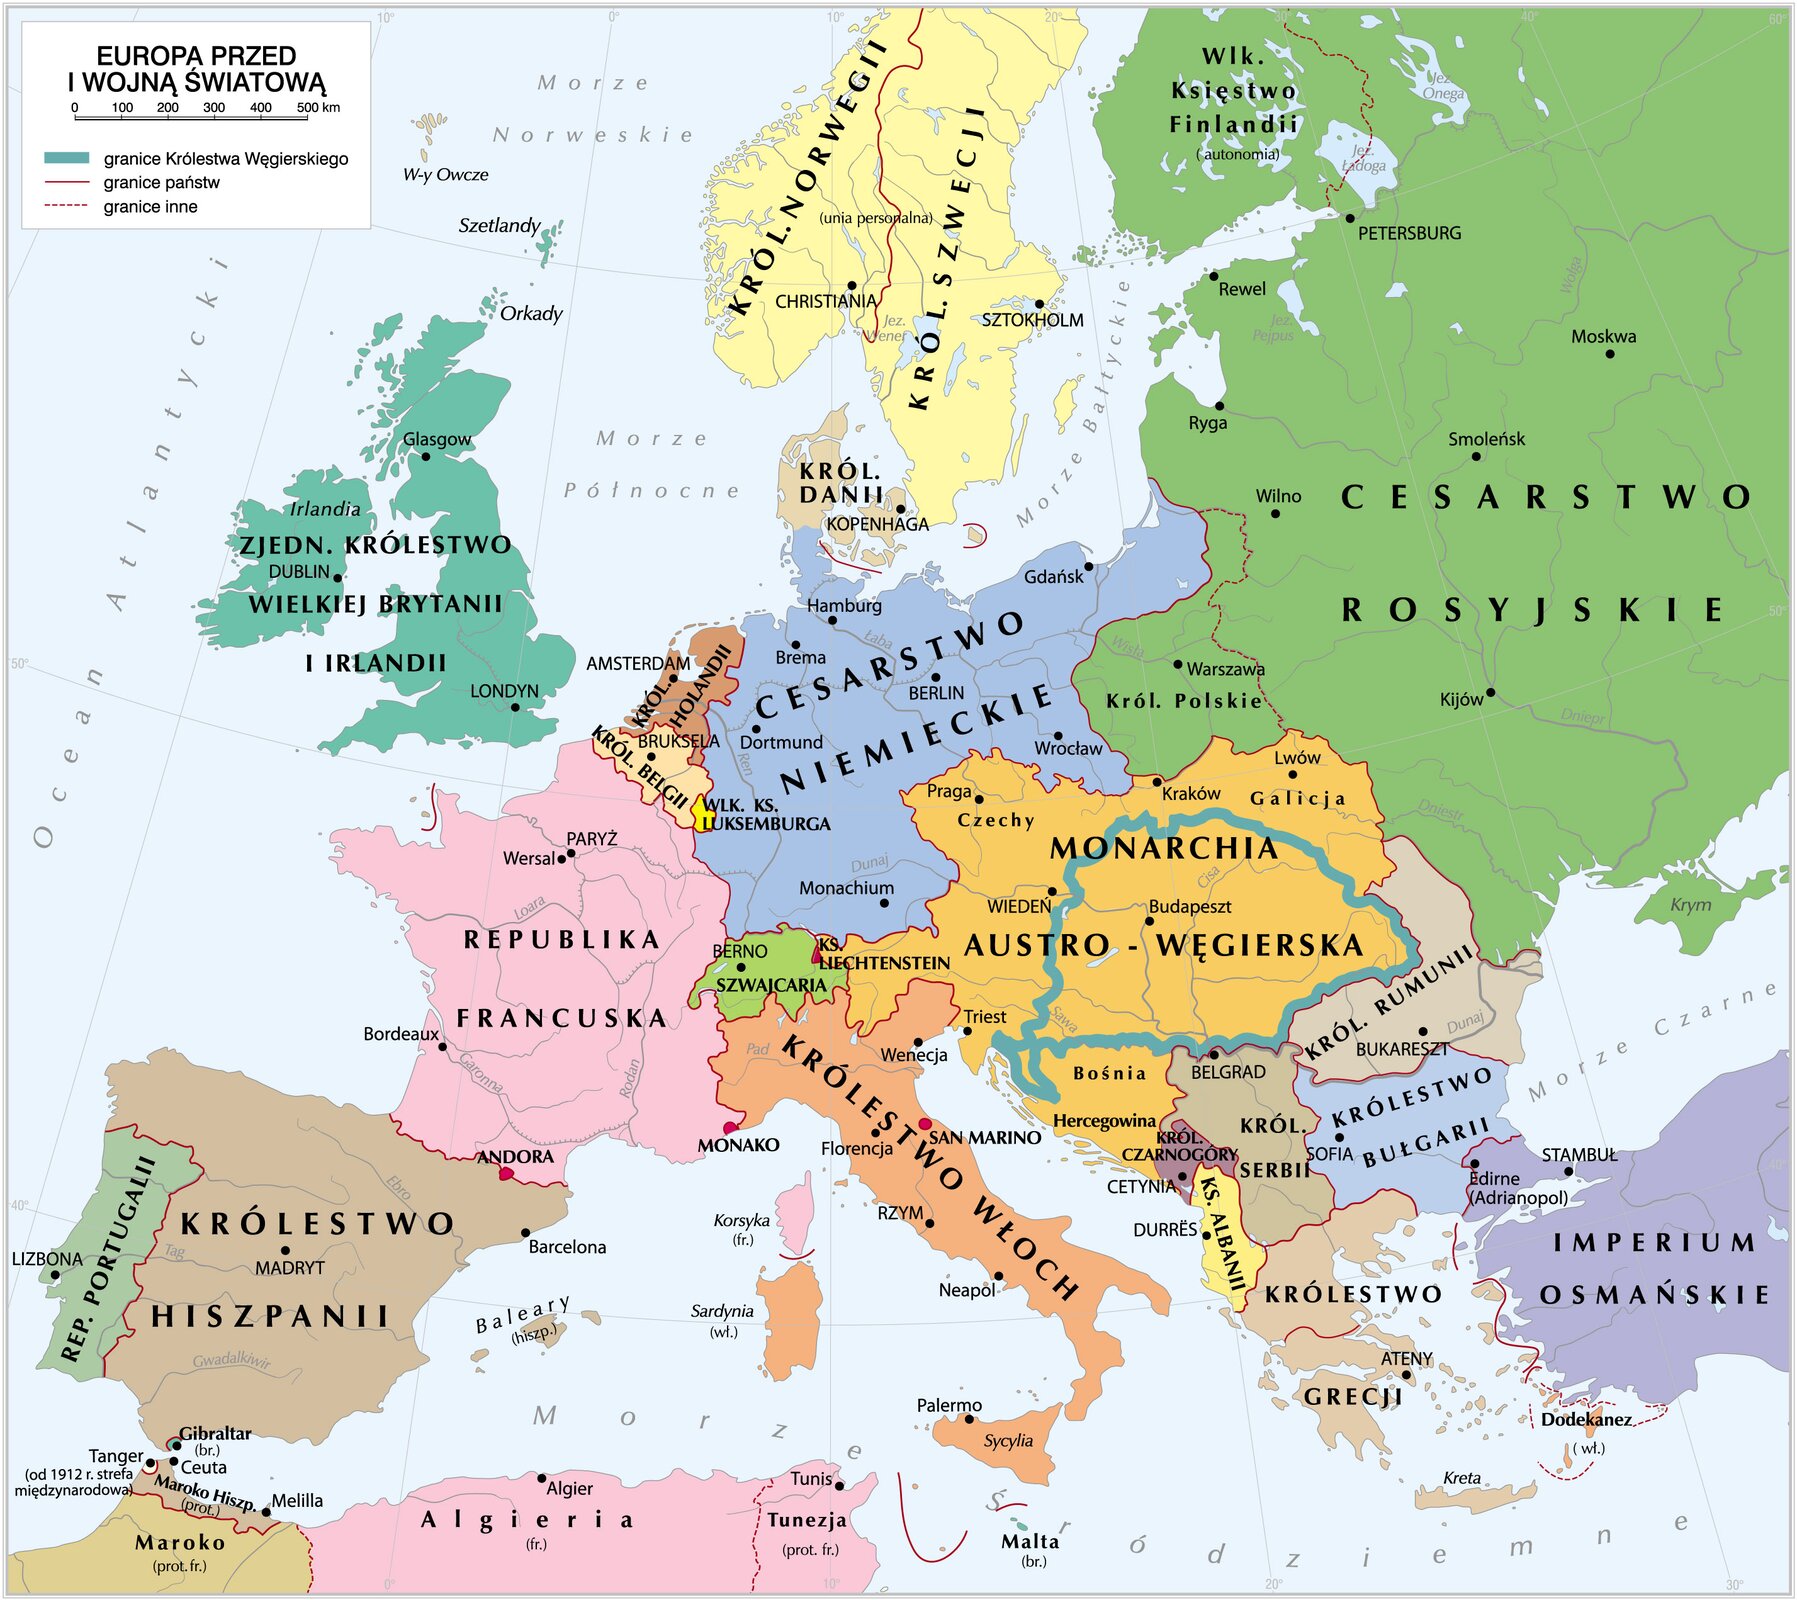 Europa przed I wojną światową Europa przed I wojną światową Źródło: Krystian Chariza i zespół, licencja: CC BY 3.0.